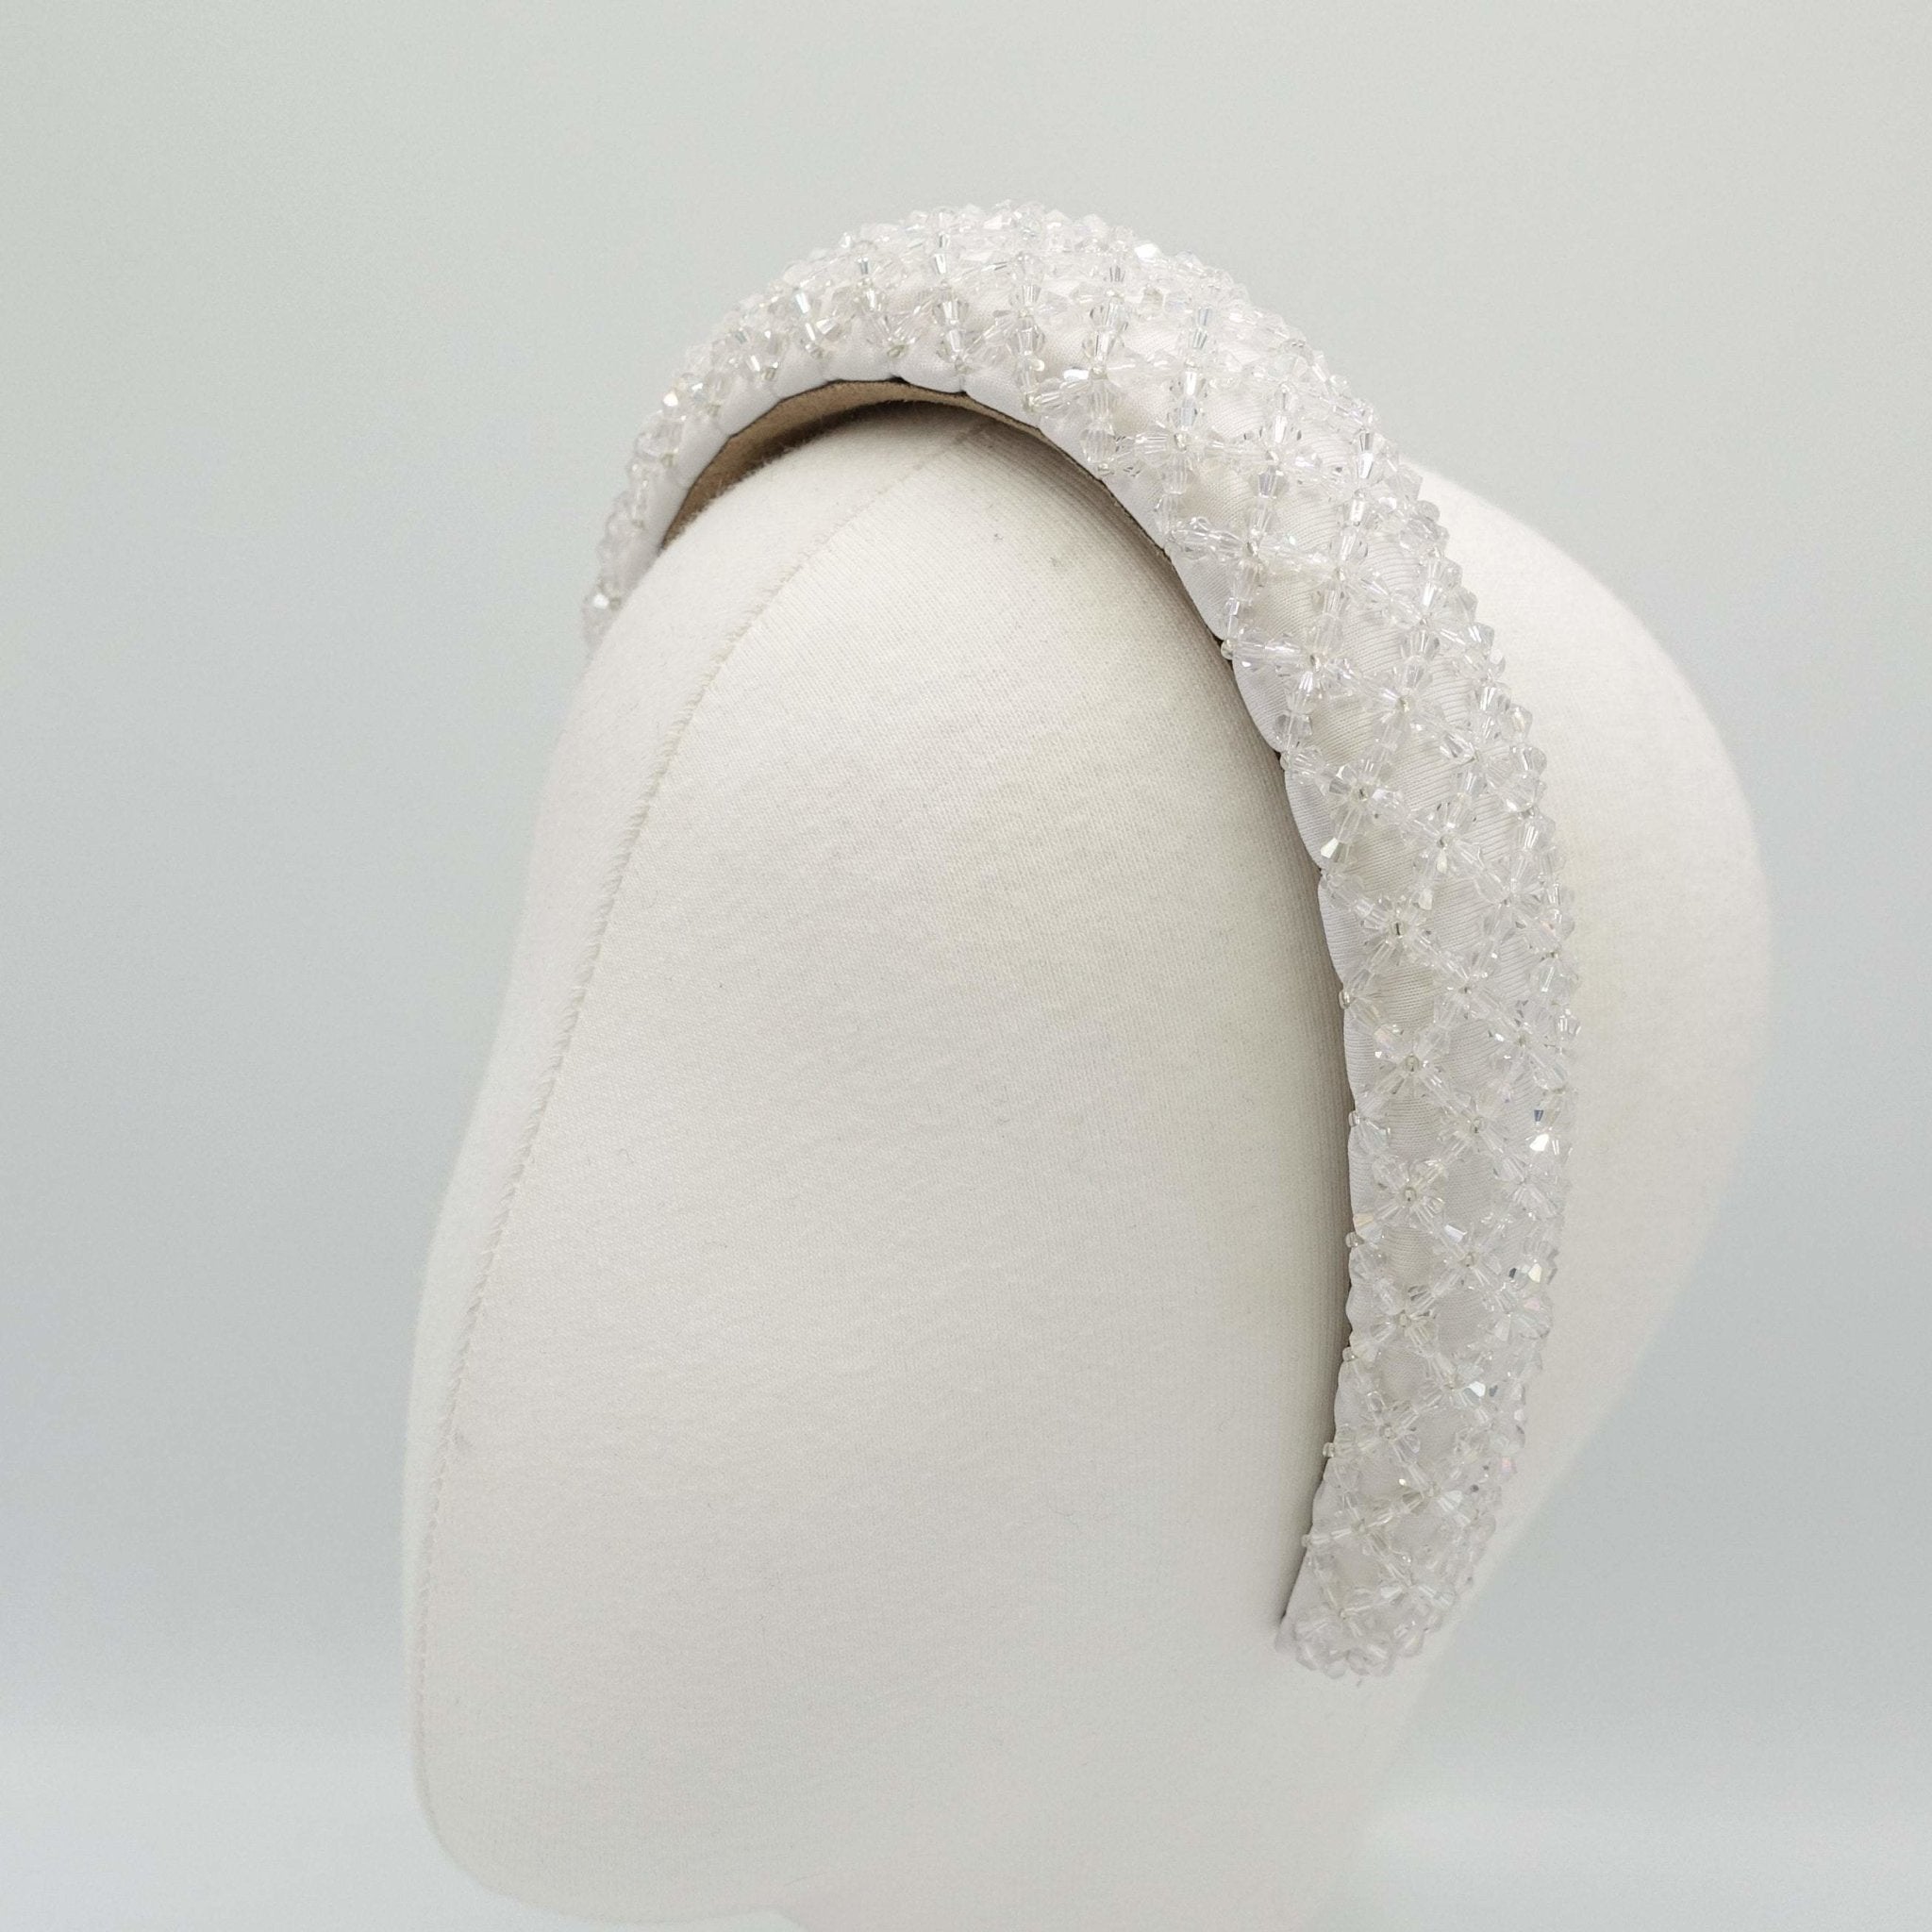 VeryShine beads net embellished padded headband stylish hairband woman hair accessory